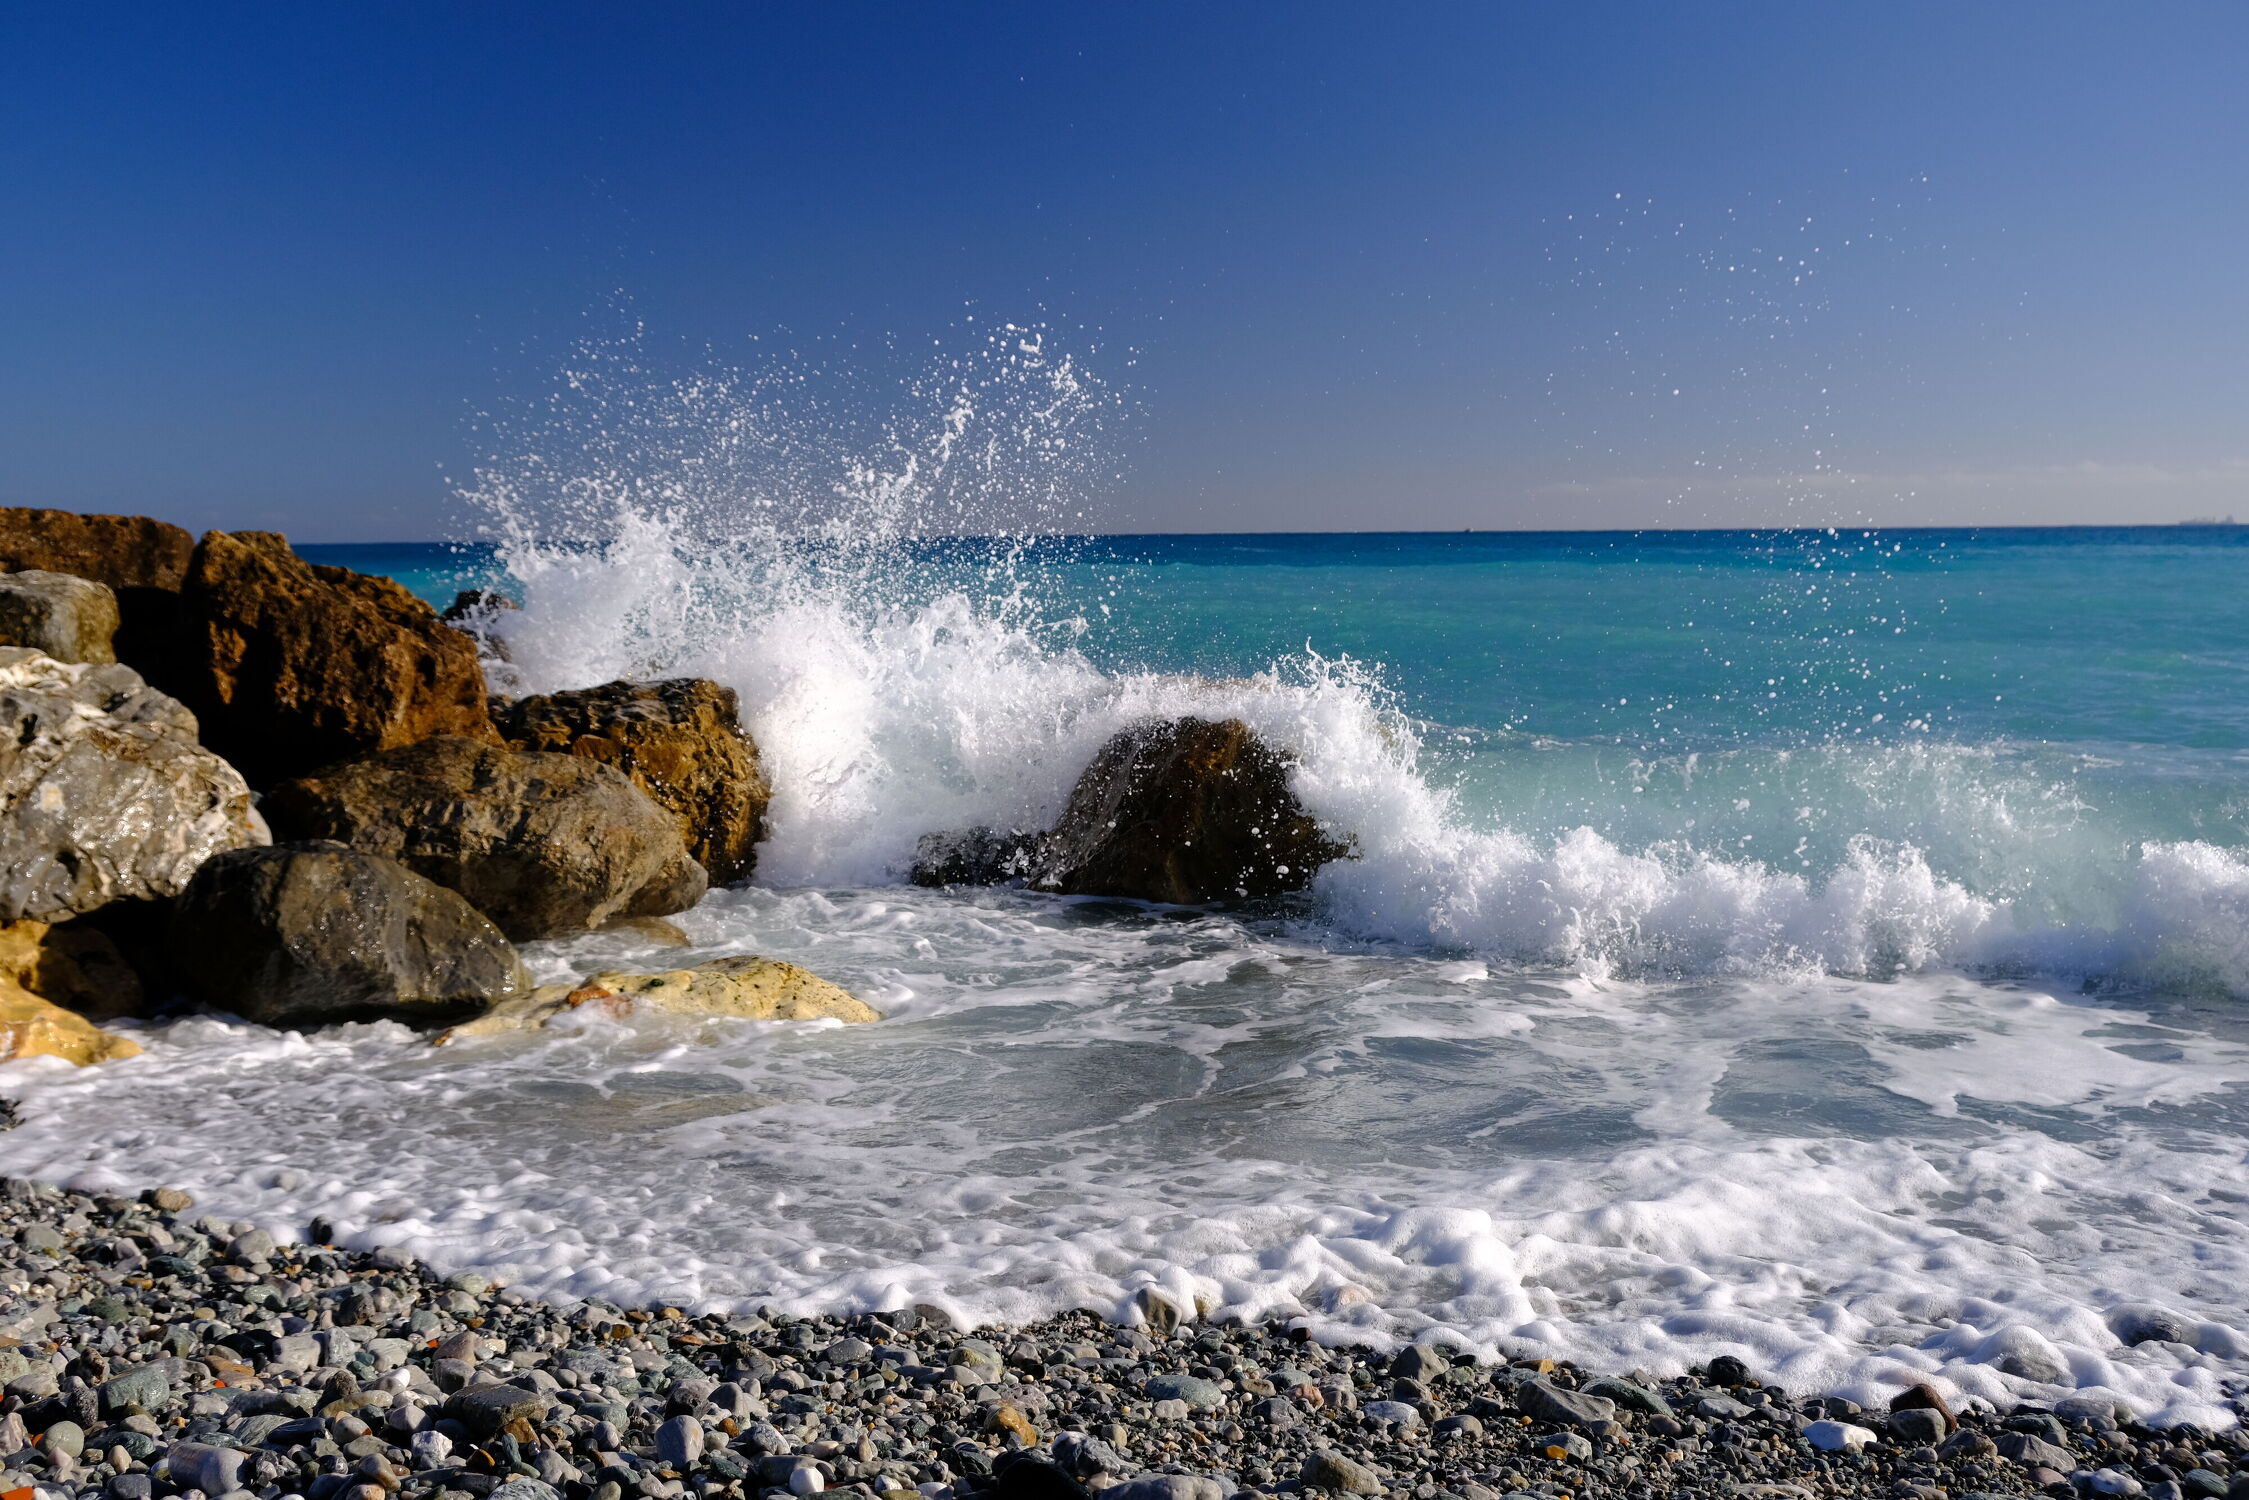 Bild mit Wasser, Strand, Meer, Mittelmeer, Ferien, Blauer Himmel, Lebensfreude, ozean, Welle